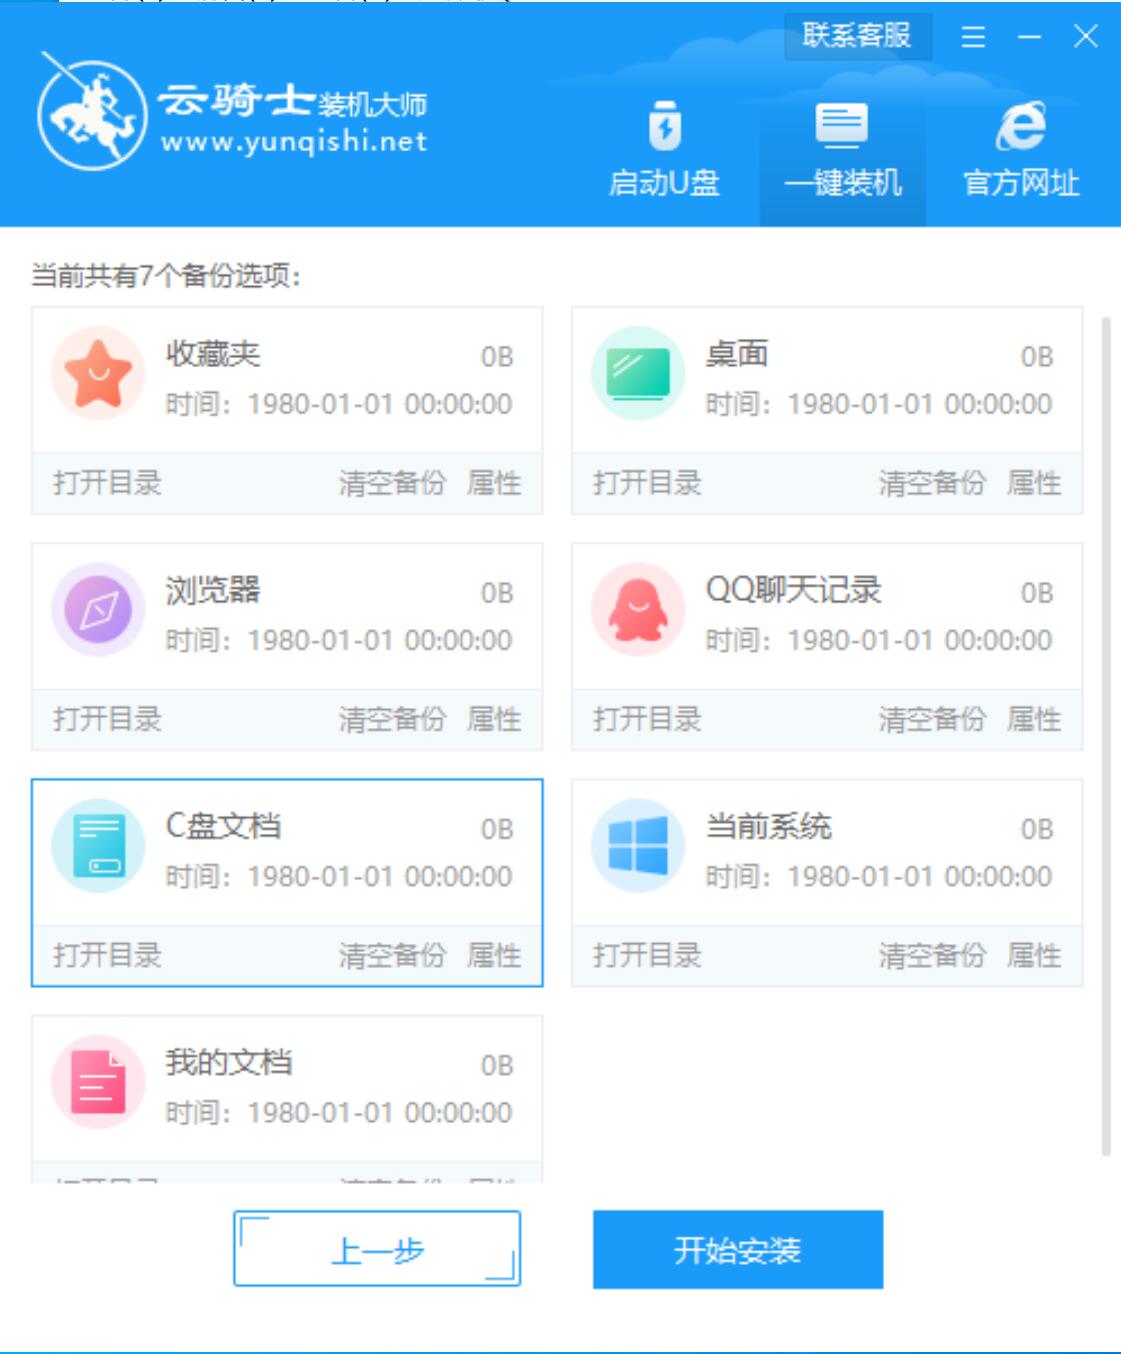 新版技术员联盟系统 GHOST Window7 X64 SP1 纯净中文旗舰版系统下载 V2022.11(7)